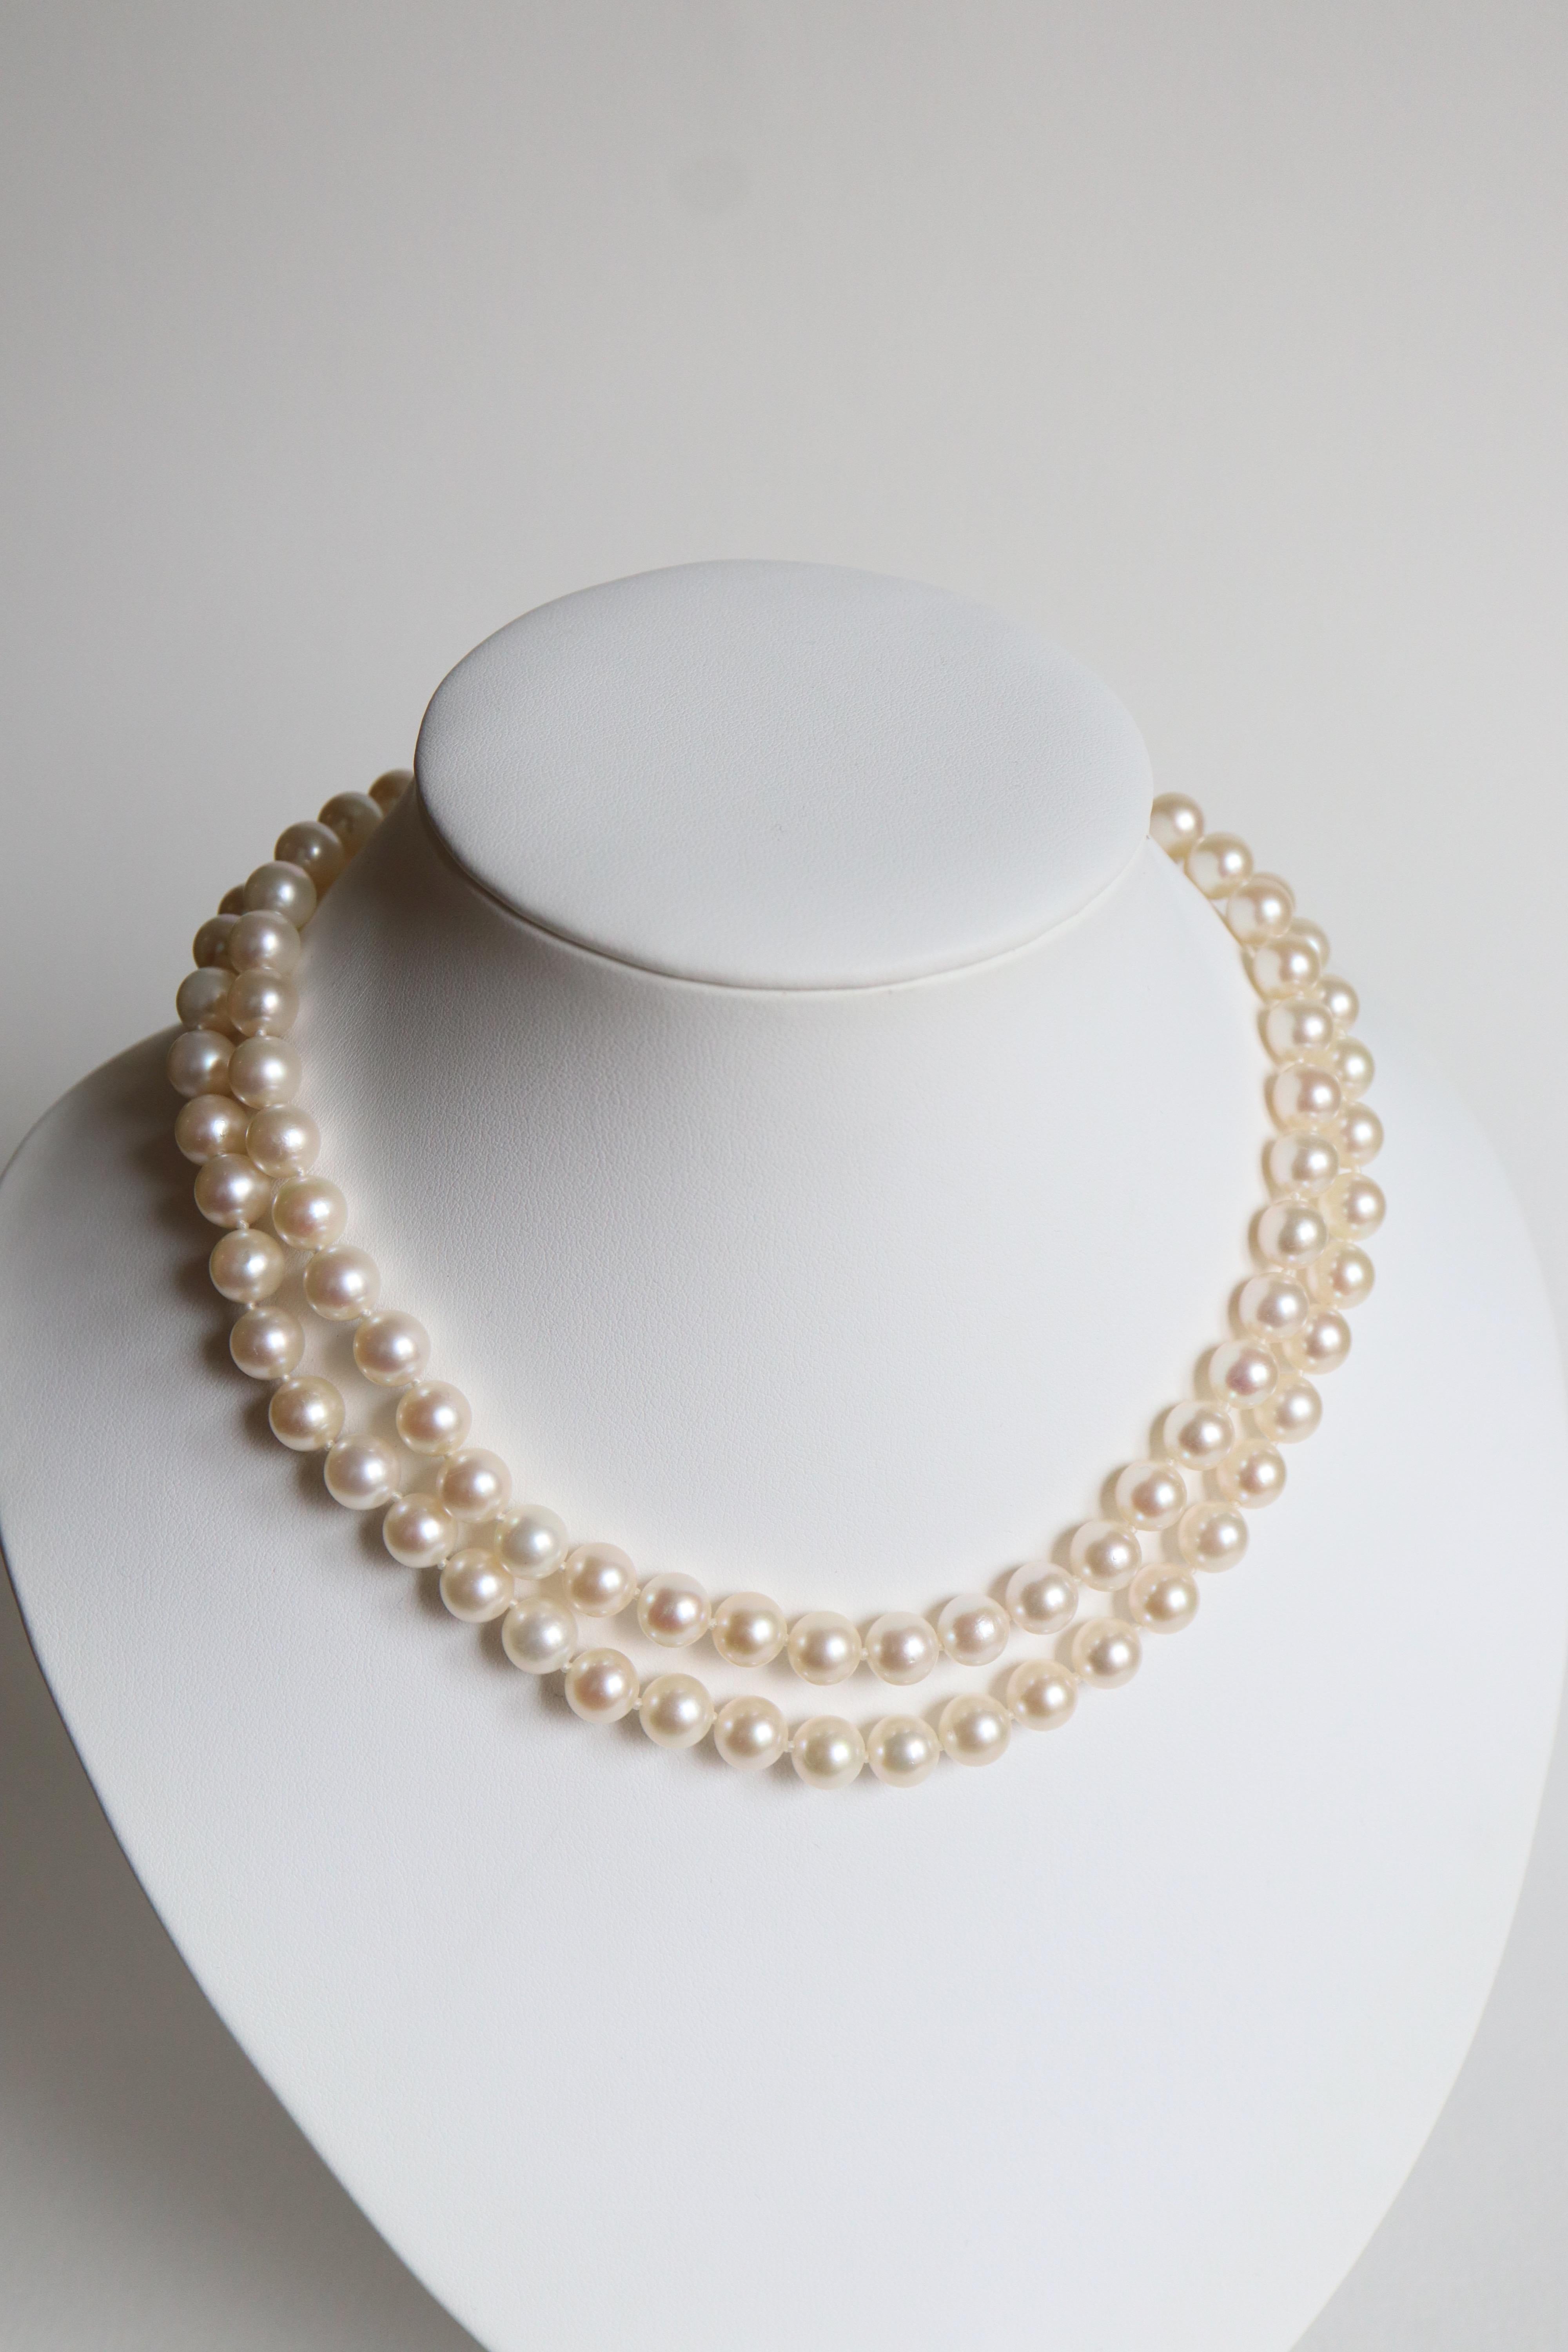 Halskette zwei Reihen von Perlen Durchmesser 8,5 mm bis 9 mm mit 18 Karat Gelbgold Verschluss gepflastert mit Diamanten für etwa 1,5 bis 2 Karat mit einer zentralen Perle von 8,5 mm bis 9 mm im Durchmesser.
Erster Rand der Perlen: 44 Perlen
Zweite